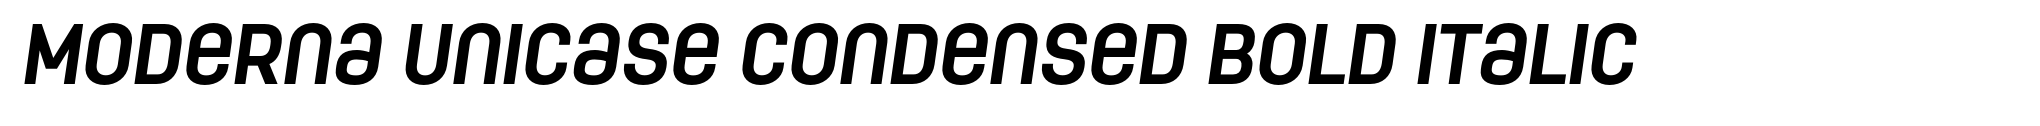 Moderna Unicase Condensed Bold Italic image